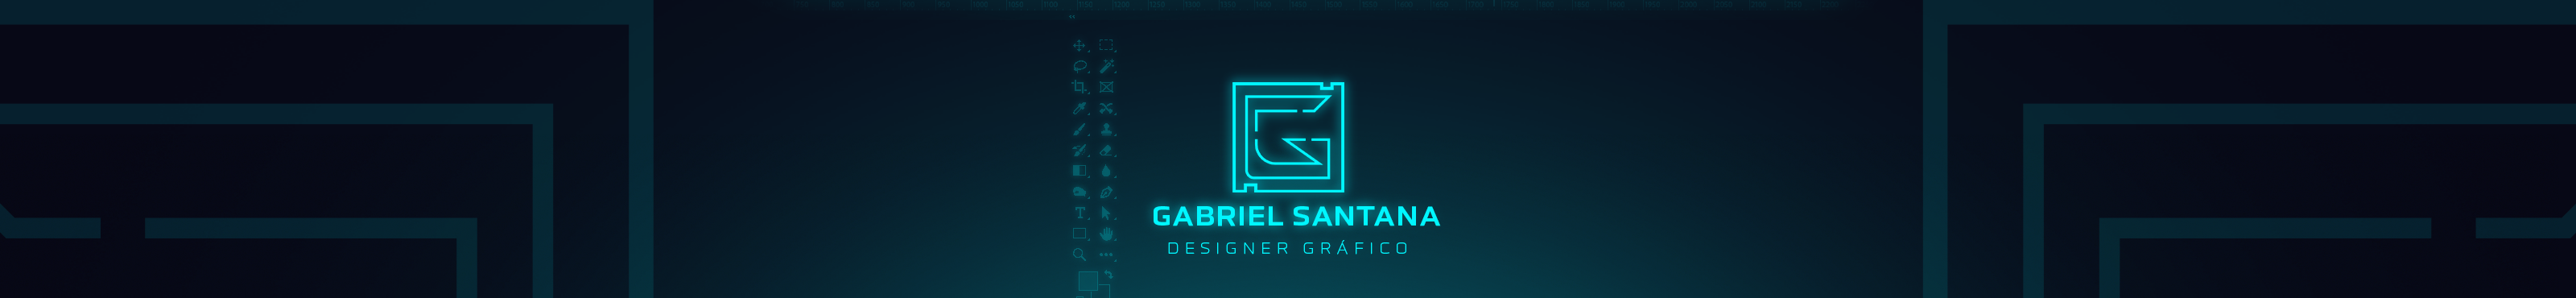 Banner de perfil de Gabriel Santana